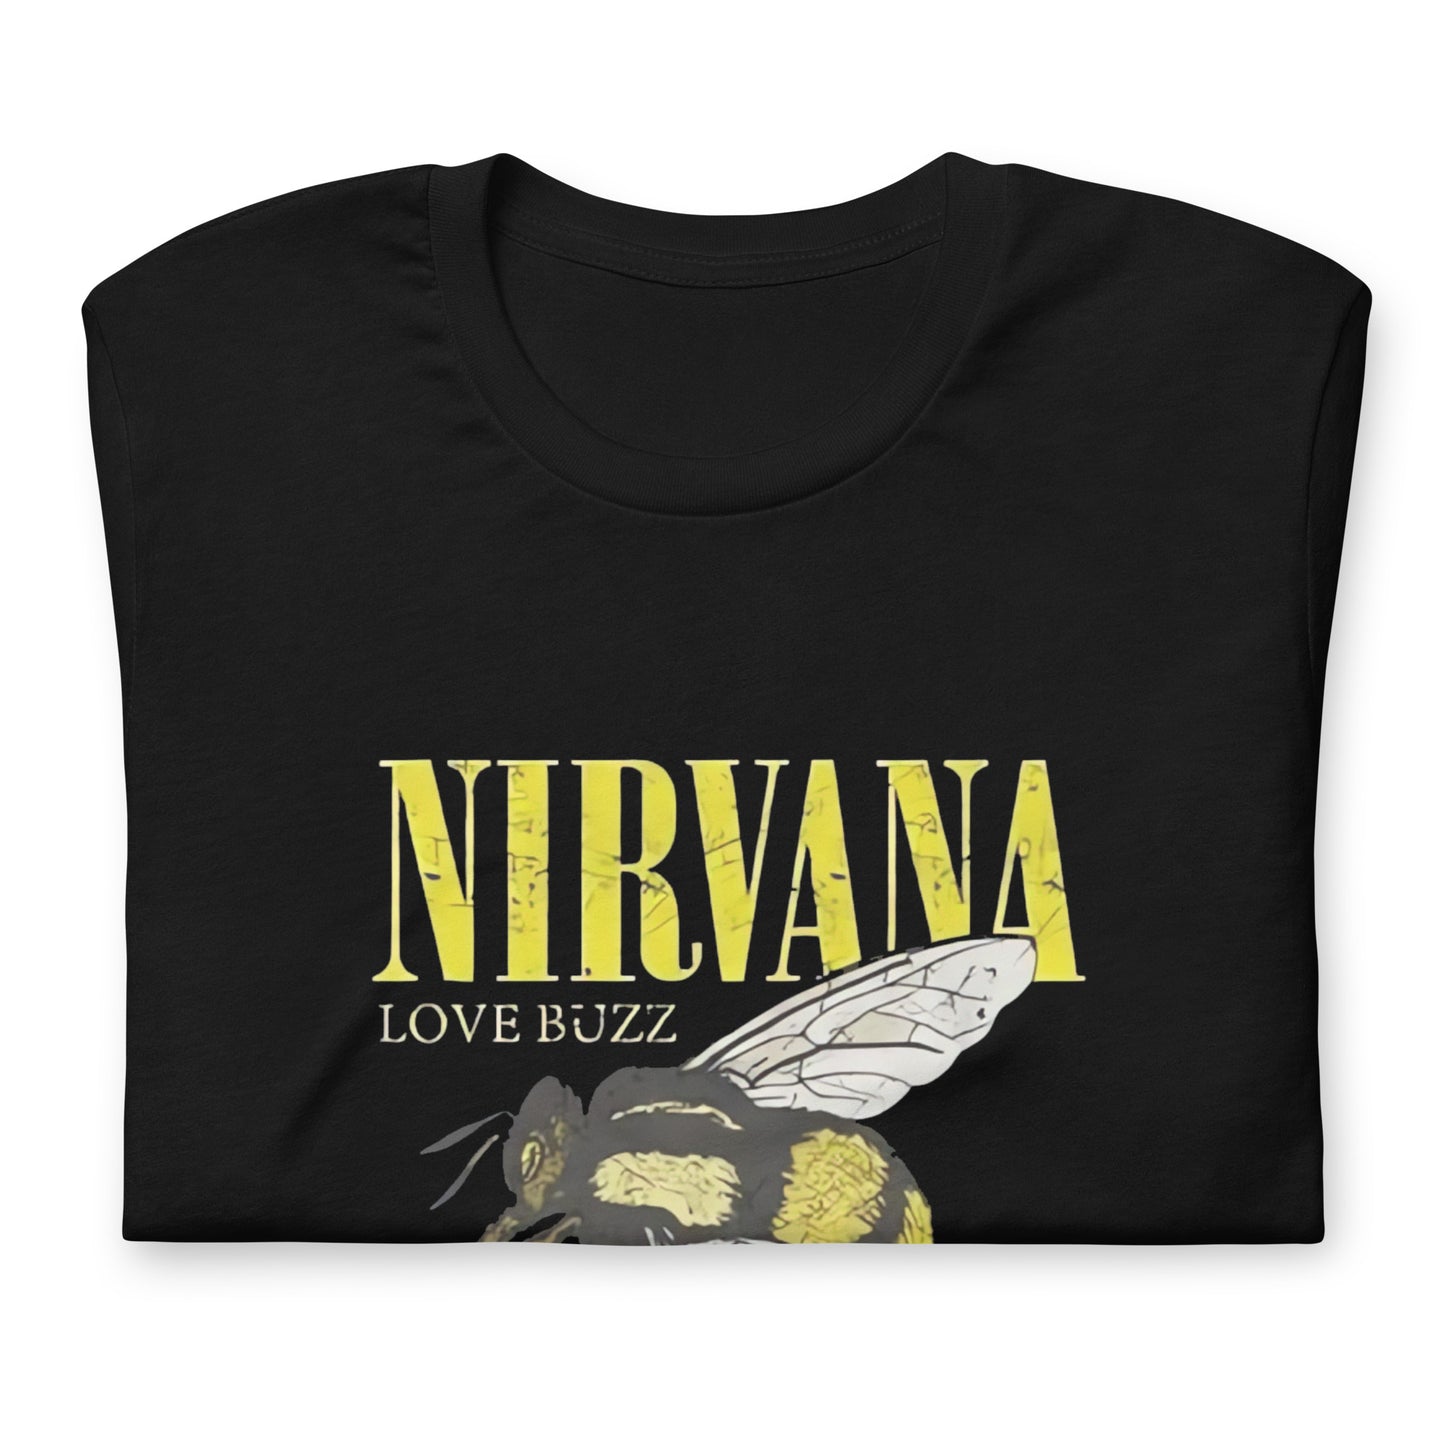 ¡Compra el mejor merchandising en Superstar! Encuentra diseños únicos y de alta calidad en camisetas únicas, Camiseta de Nirvana Love Buzz